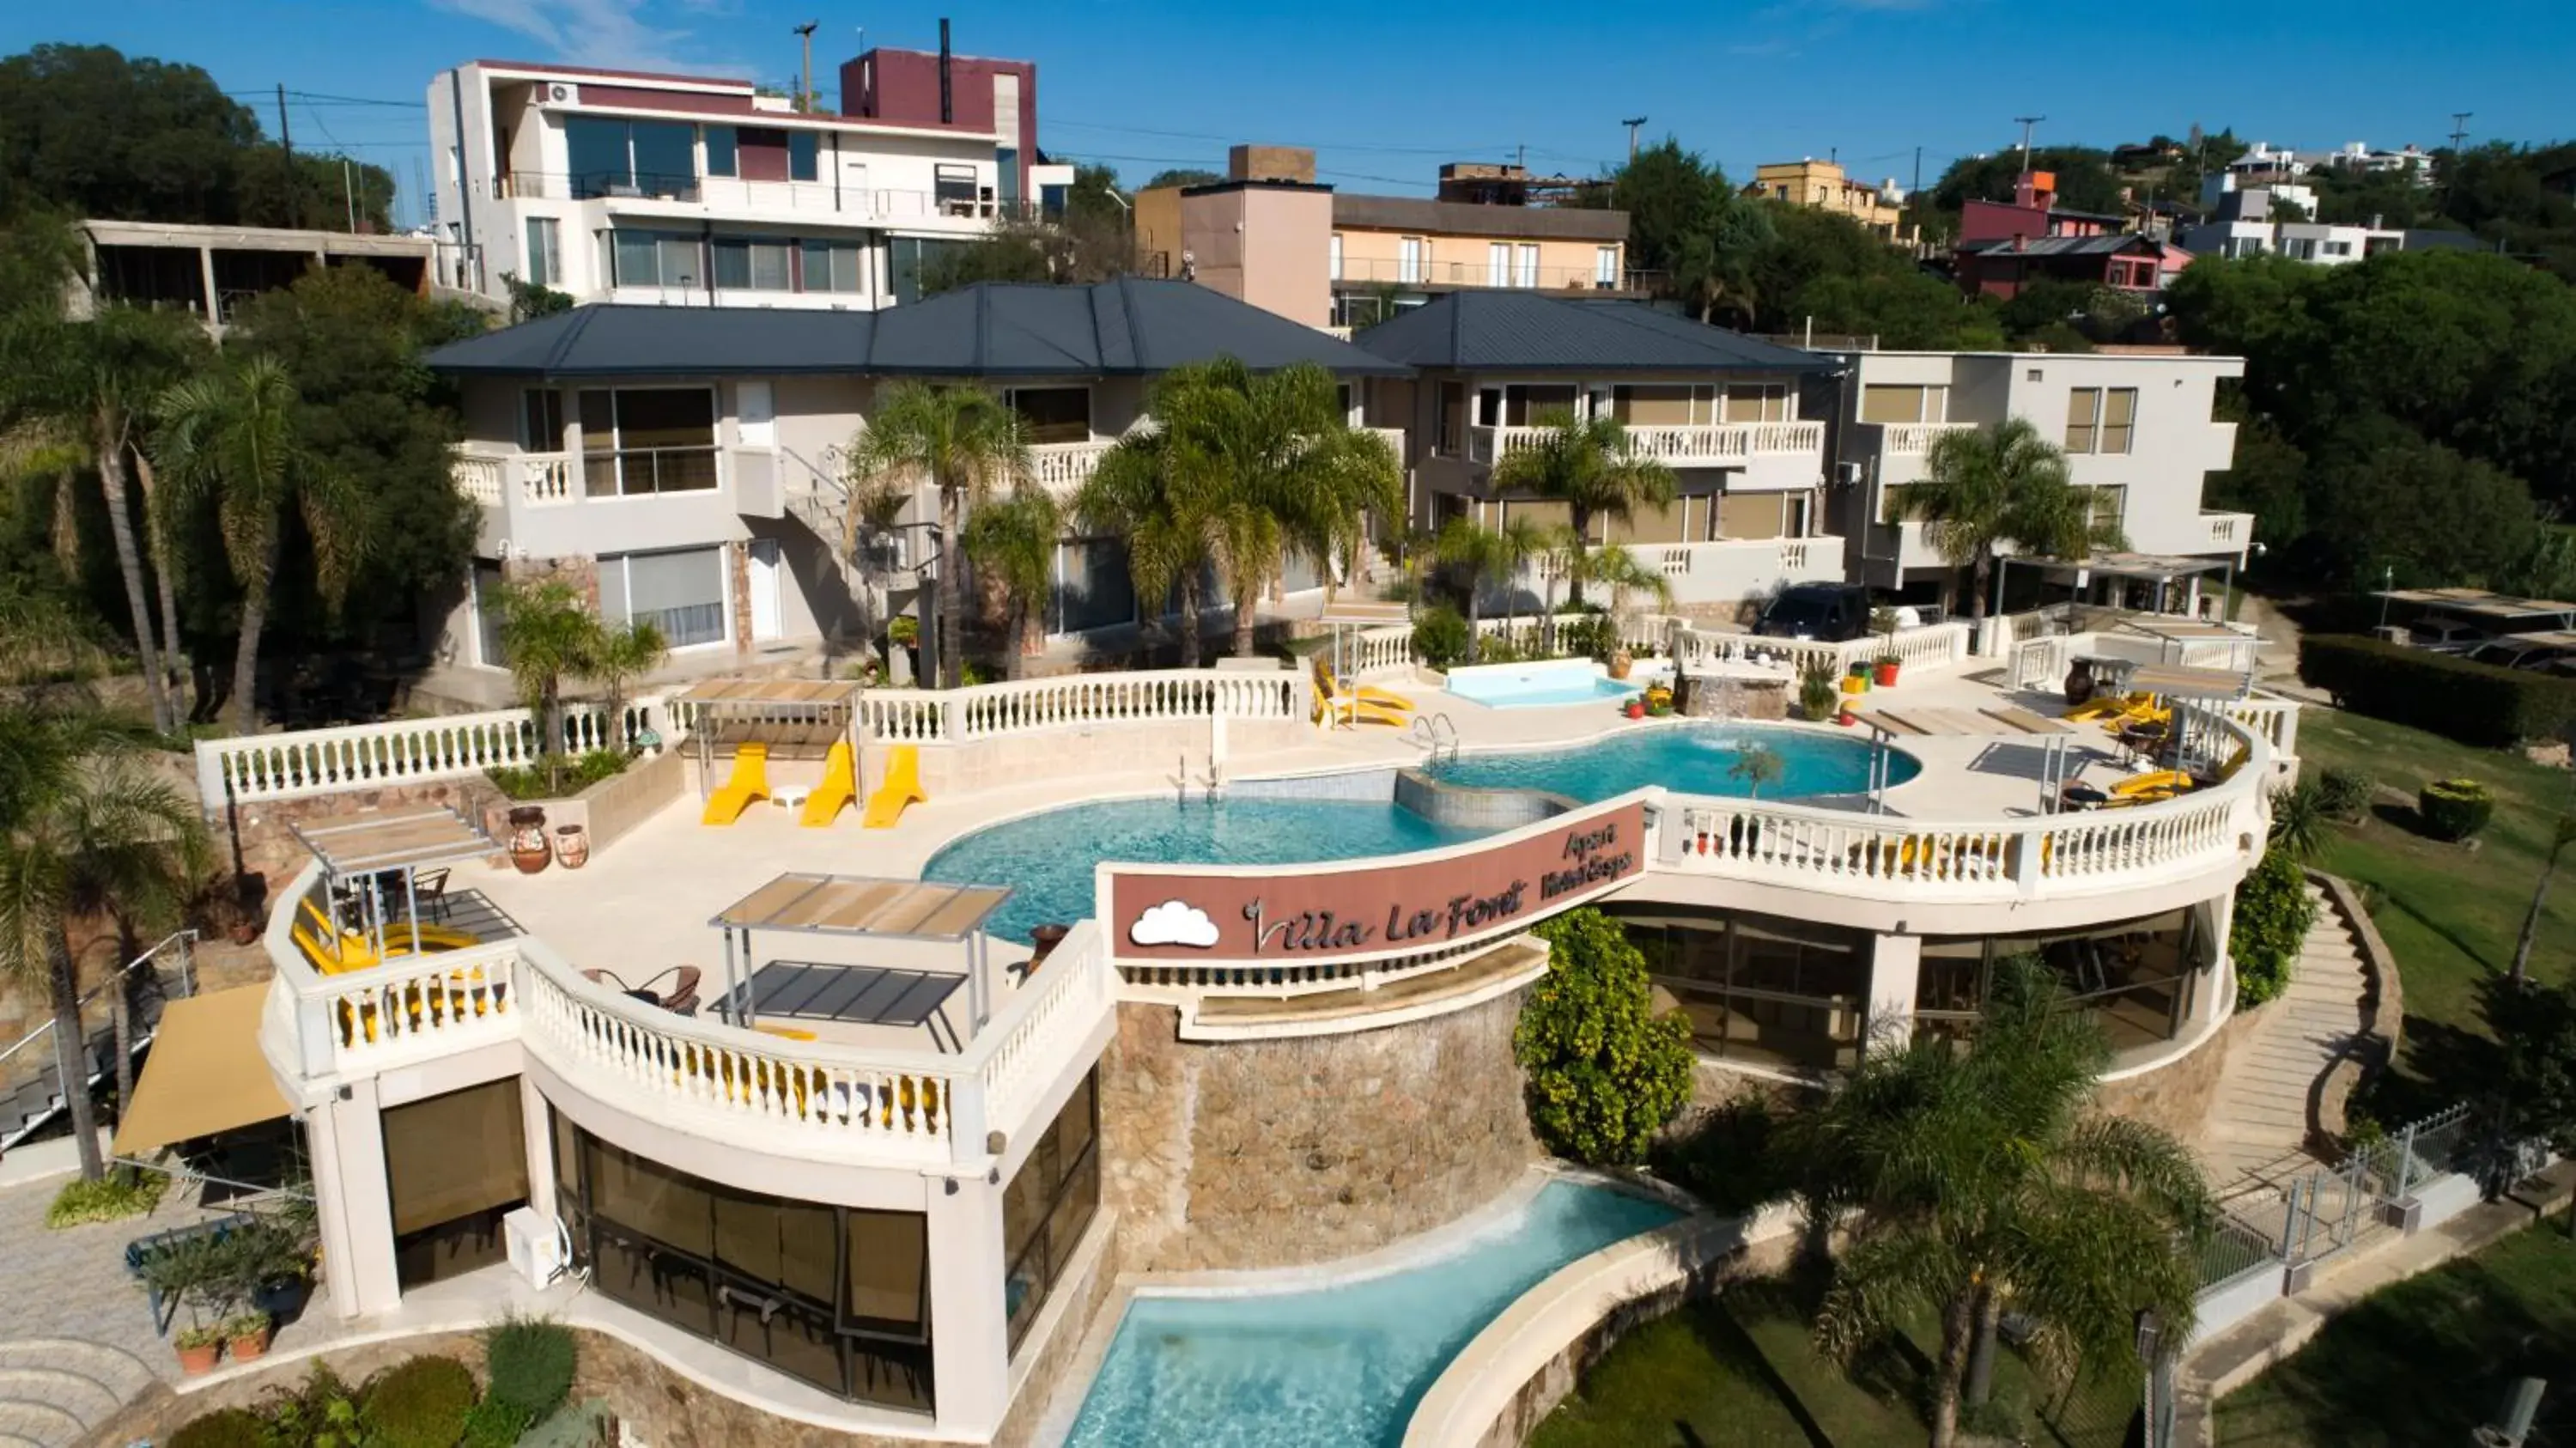 Off site, Pool View in Villa La Font Apart Hotel & Spa